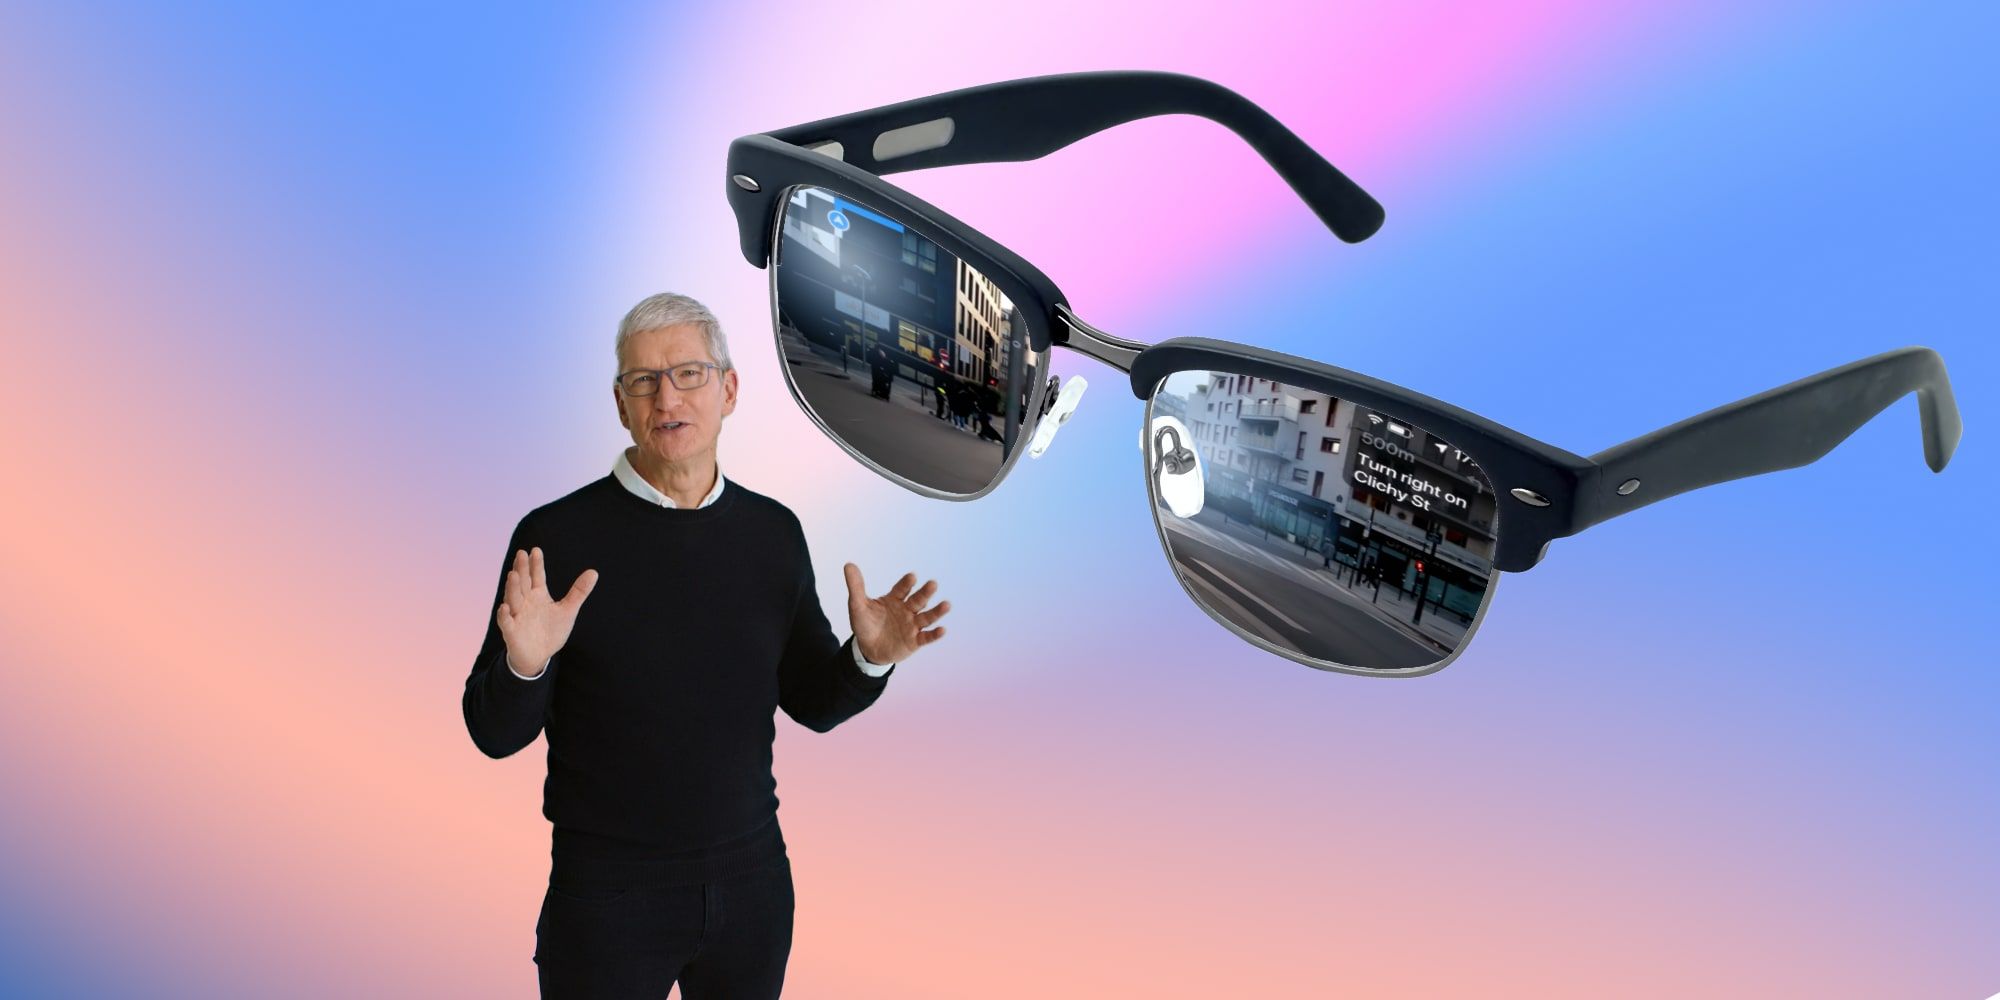 El increíble video del concepto Apple Glass muestra cómo podrían funcionar los lentes AR